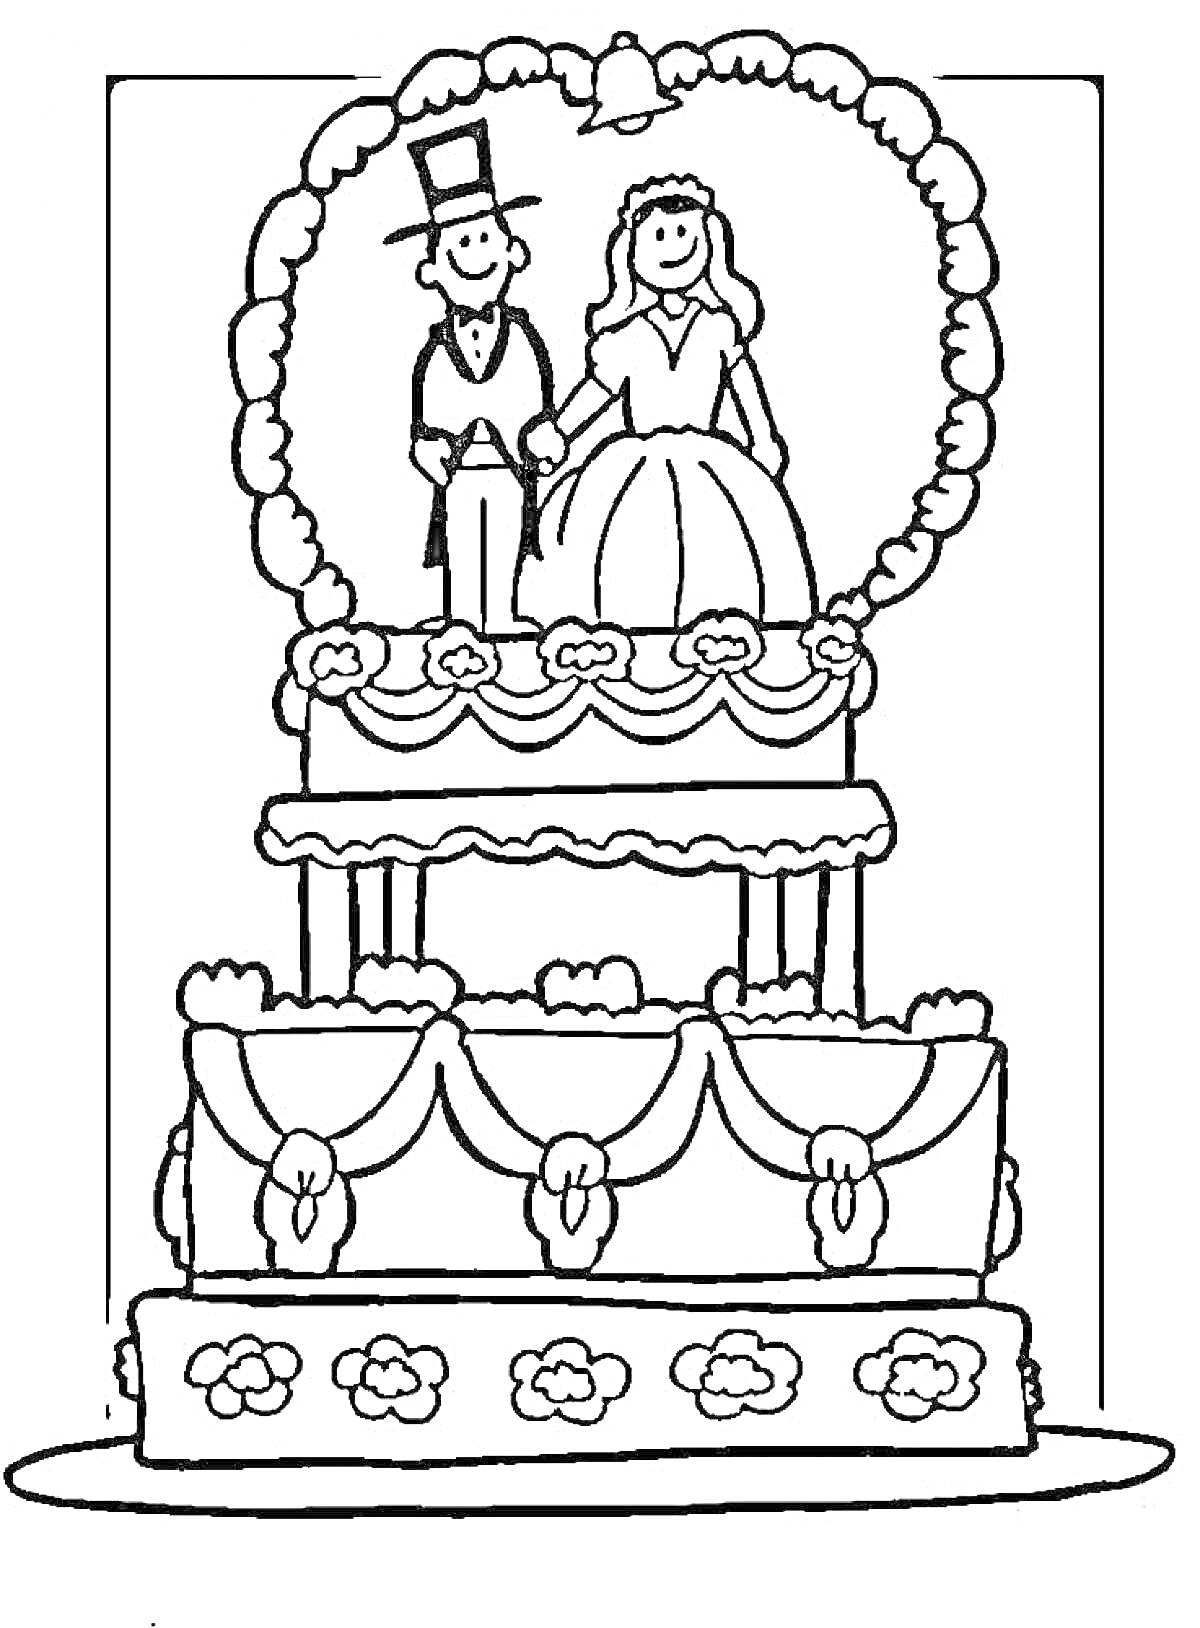 Раскраска Свадебный торт с фигурками жениха и невесты